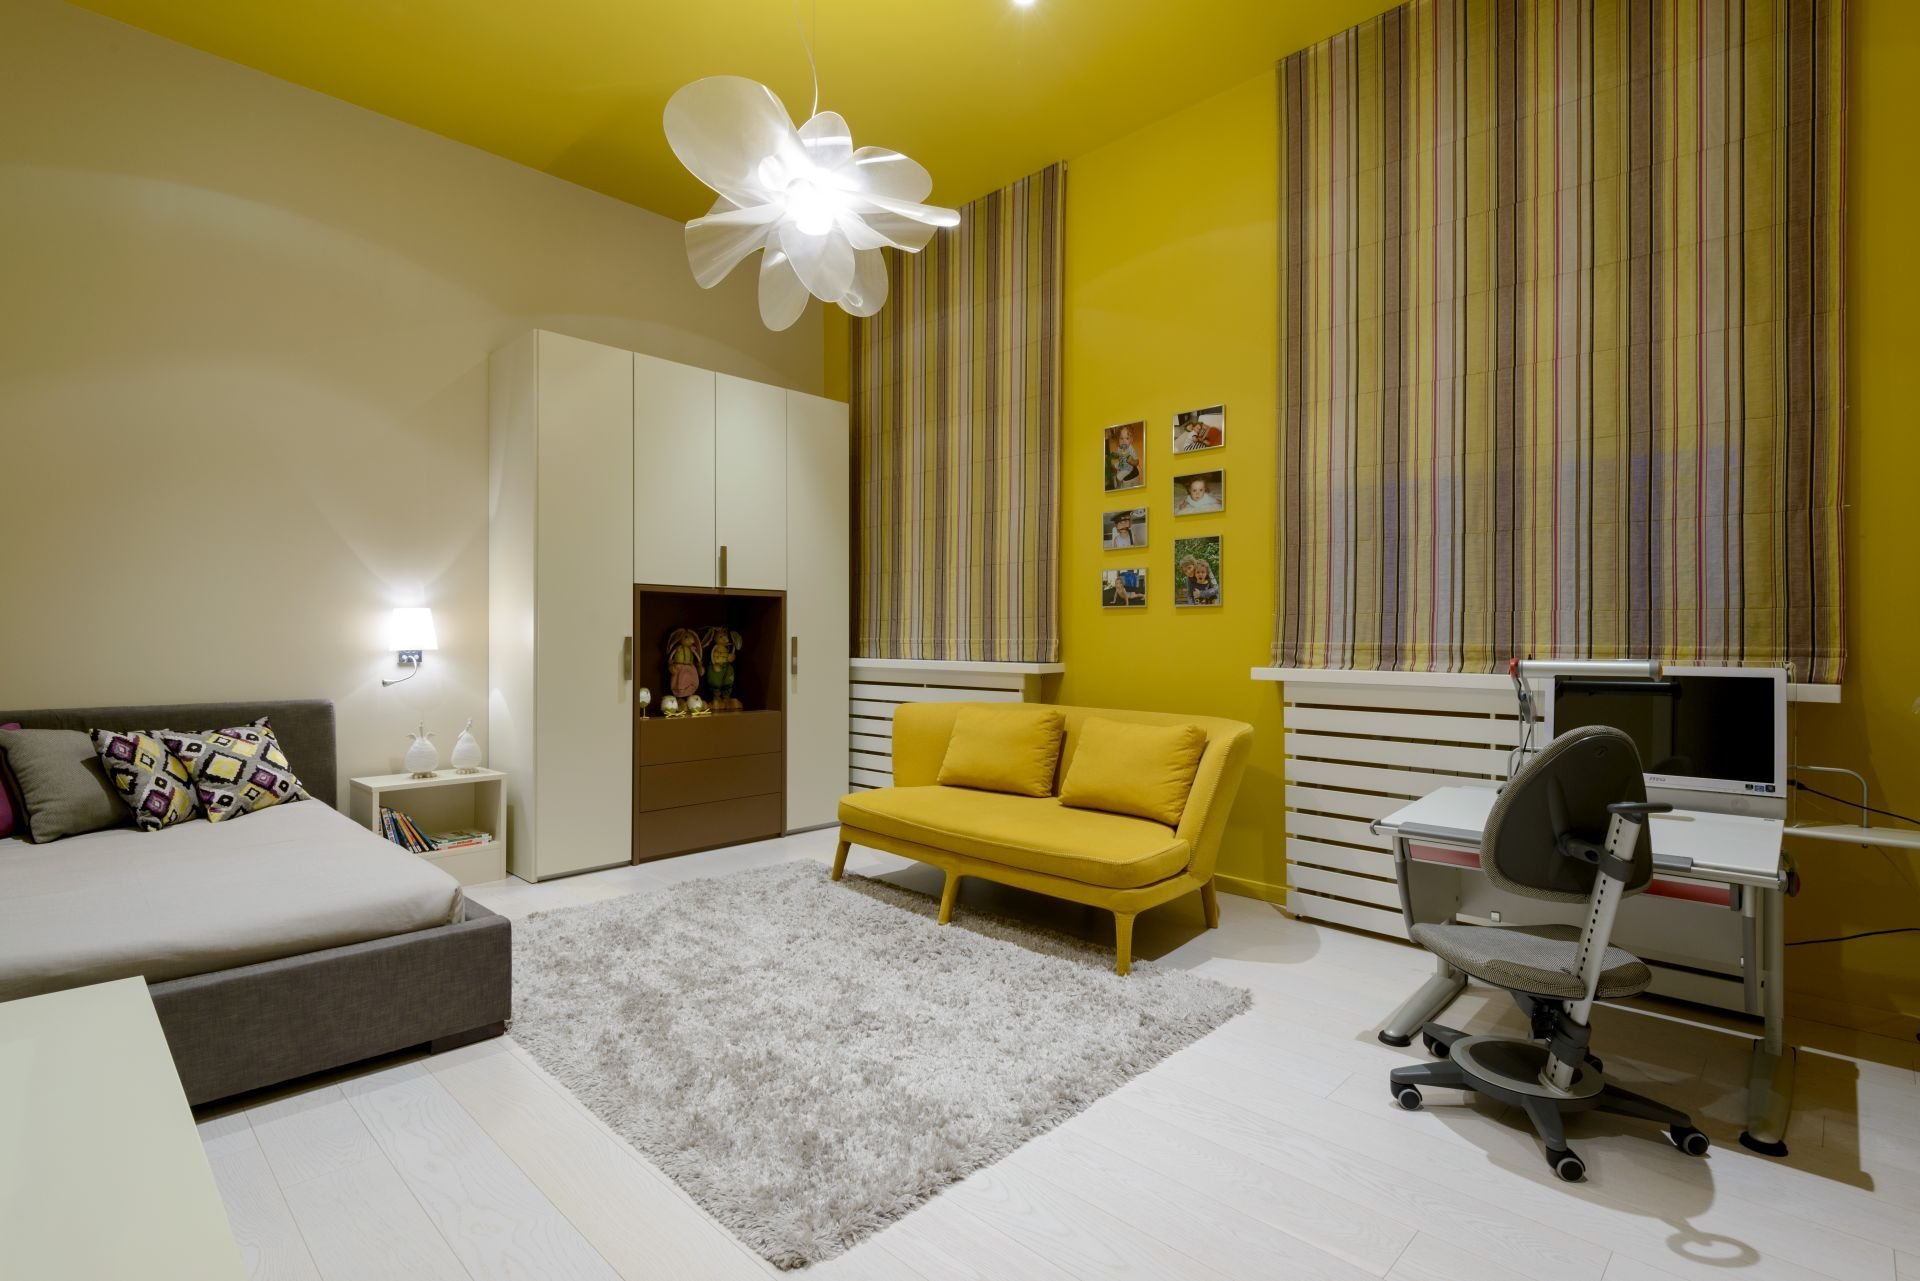 Горчичные обои. Желтый интерьер. Желтые стены в интерьере. Комната с желтыми стенами. Желтый диван в интерьере.